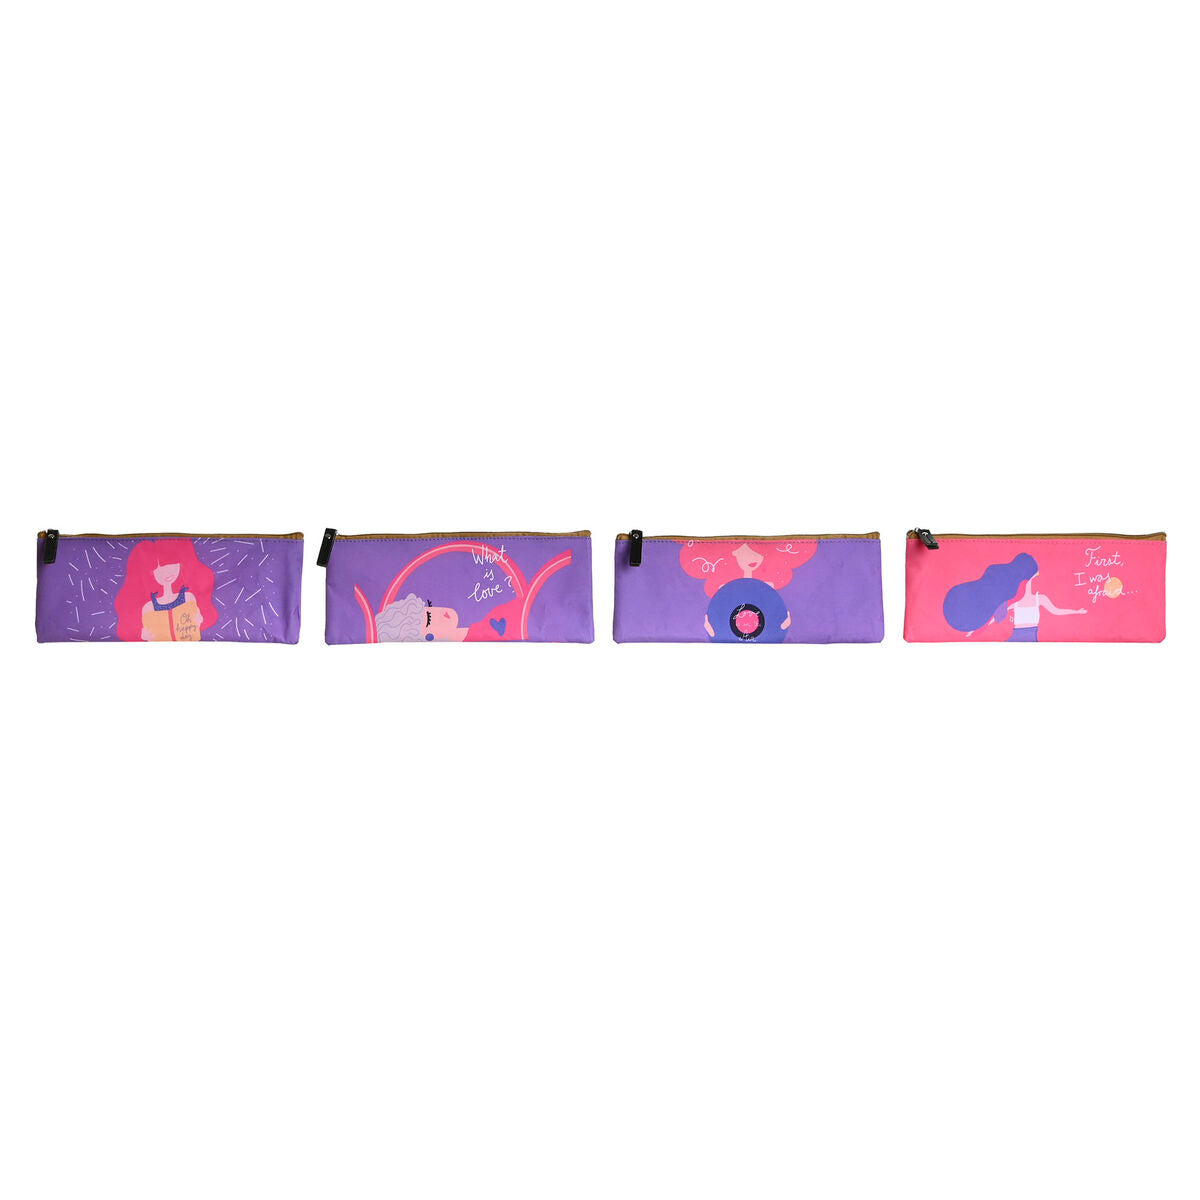 Æske DKD Home Decor Pink Syren 23 x 1 x 9 cm (4 enheder)